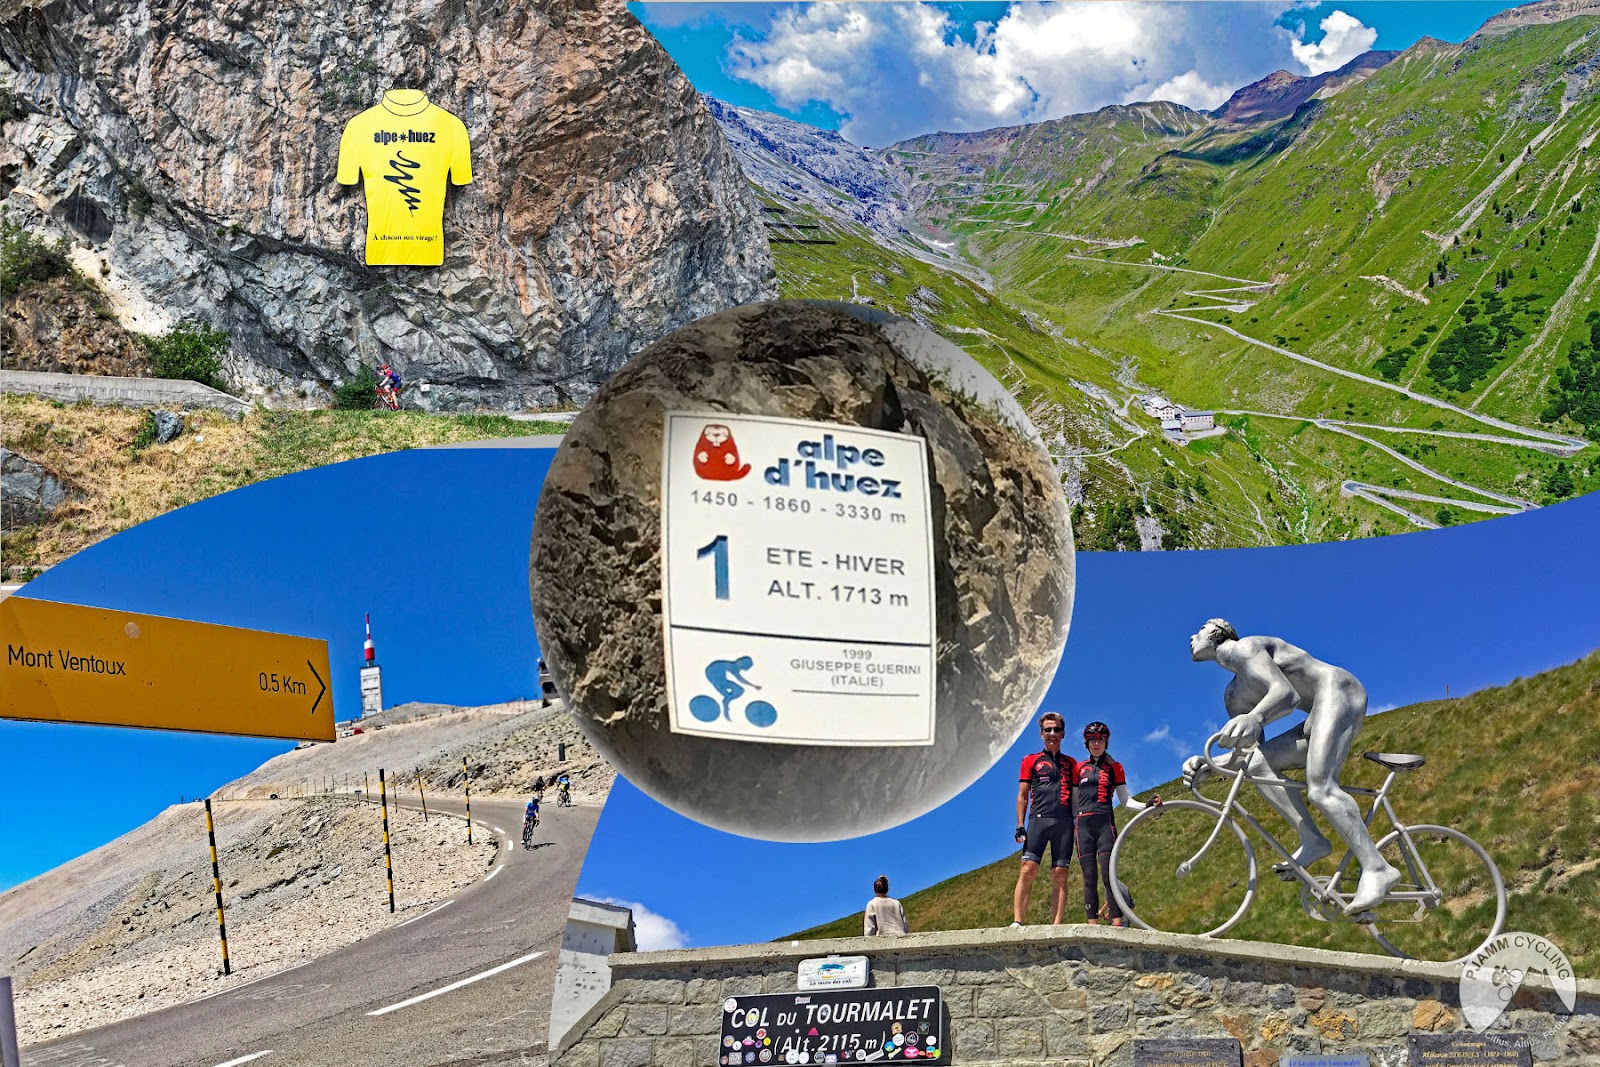 photo collage shows views of the Alpe d'Huez, Col du Tourmalet, Passo dello Stelvio, and Mont Ventoux climbs